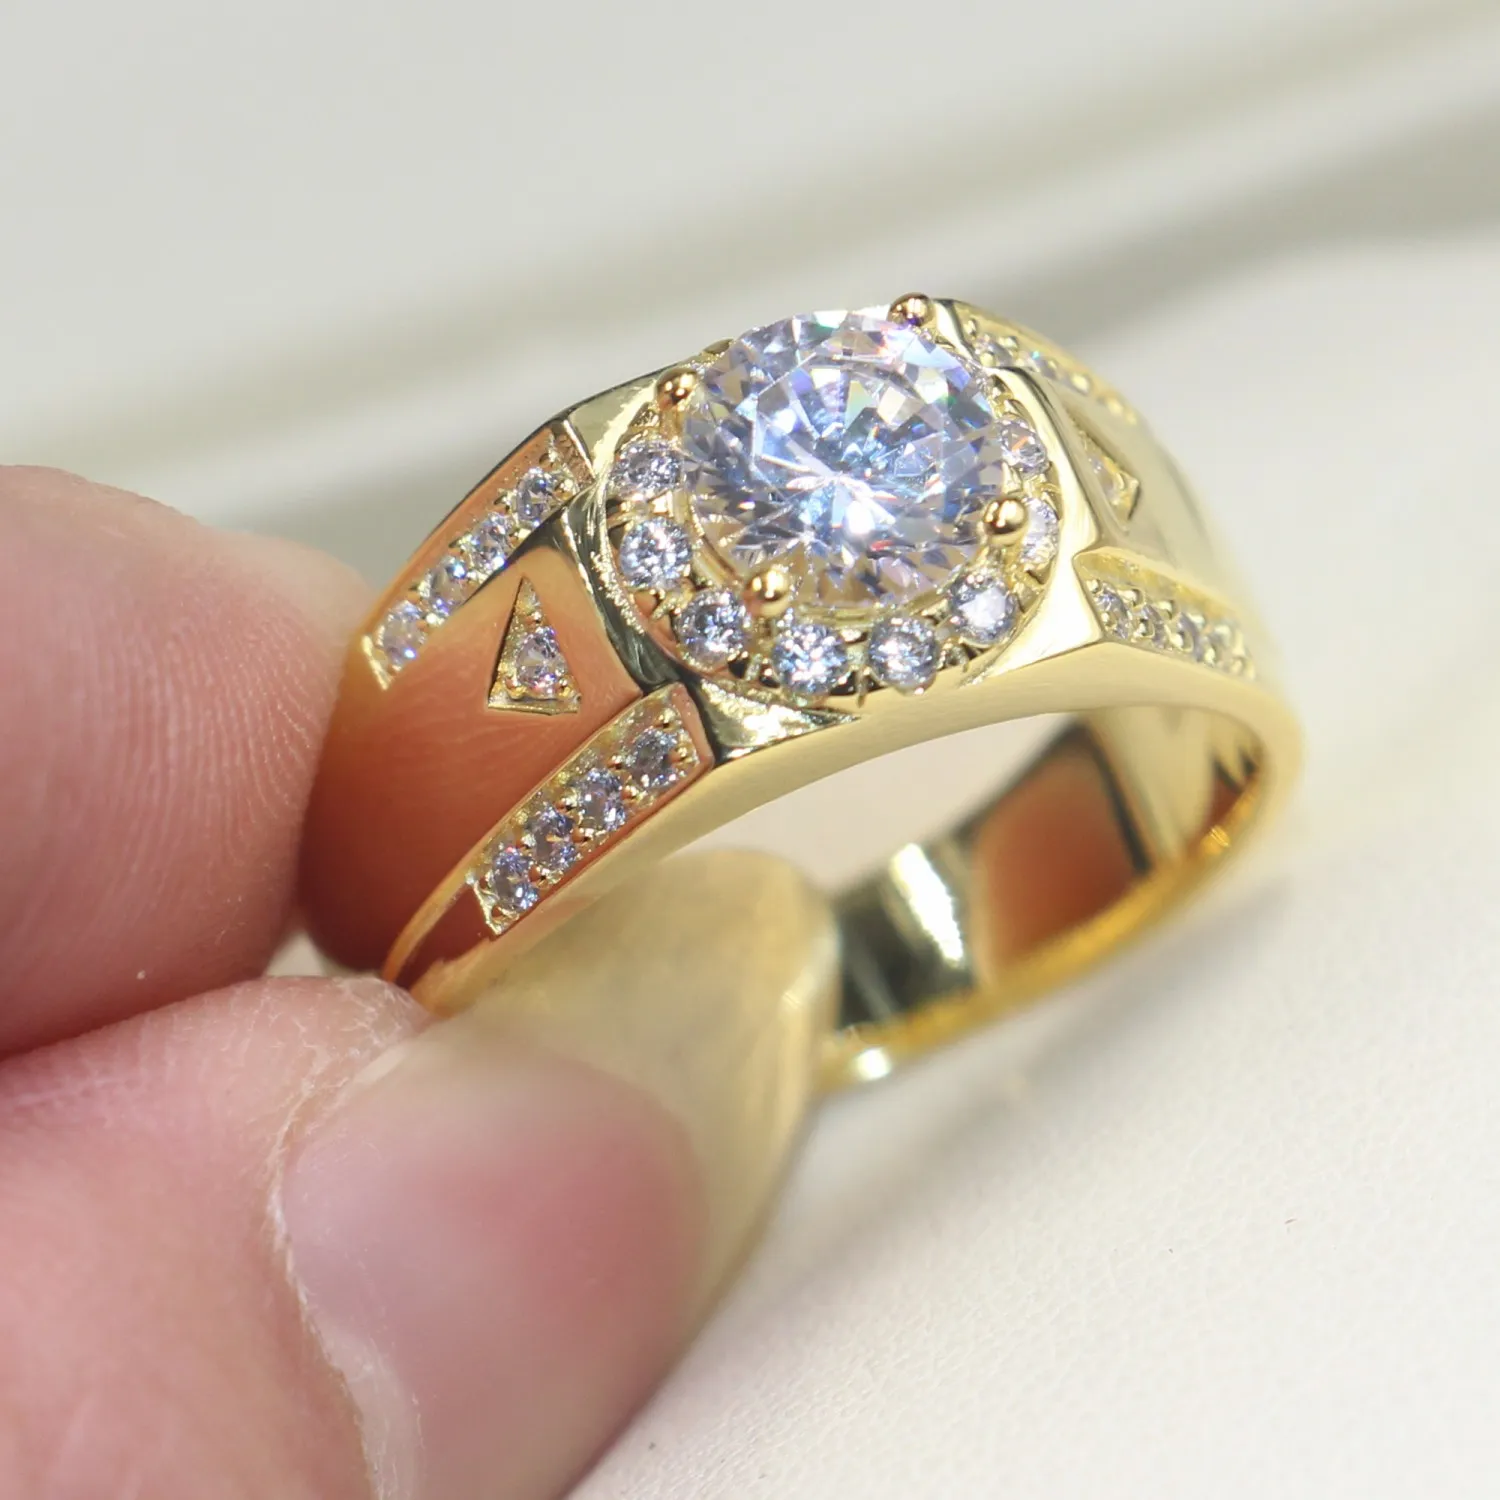 Vecalon hommes bijoux bague de mariage 1 5ct diamant Cz or jaune rempli 925 argent Sterling bague de fiançailles 281H